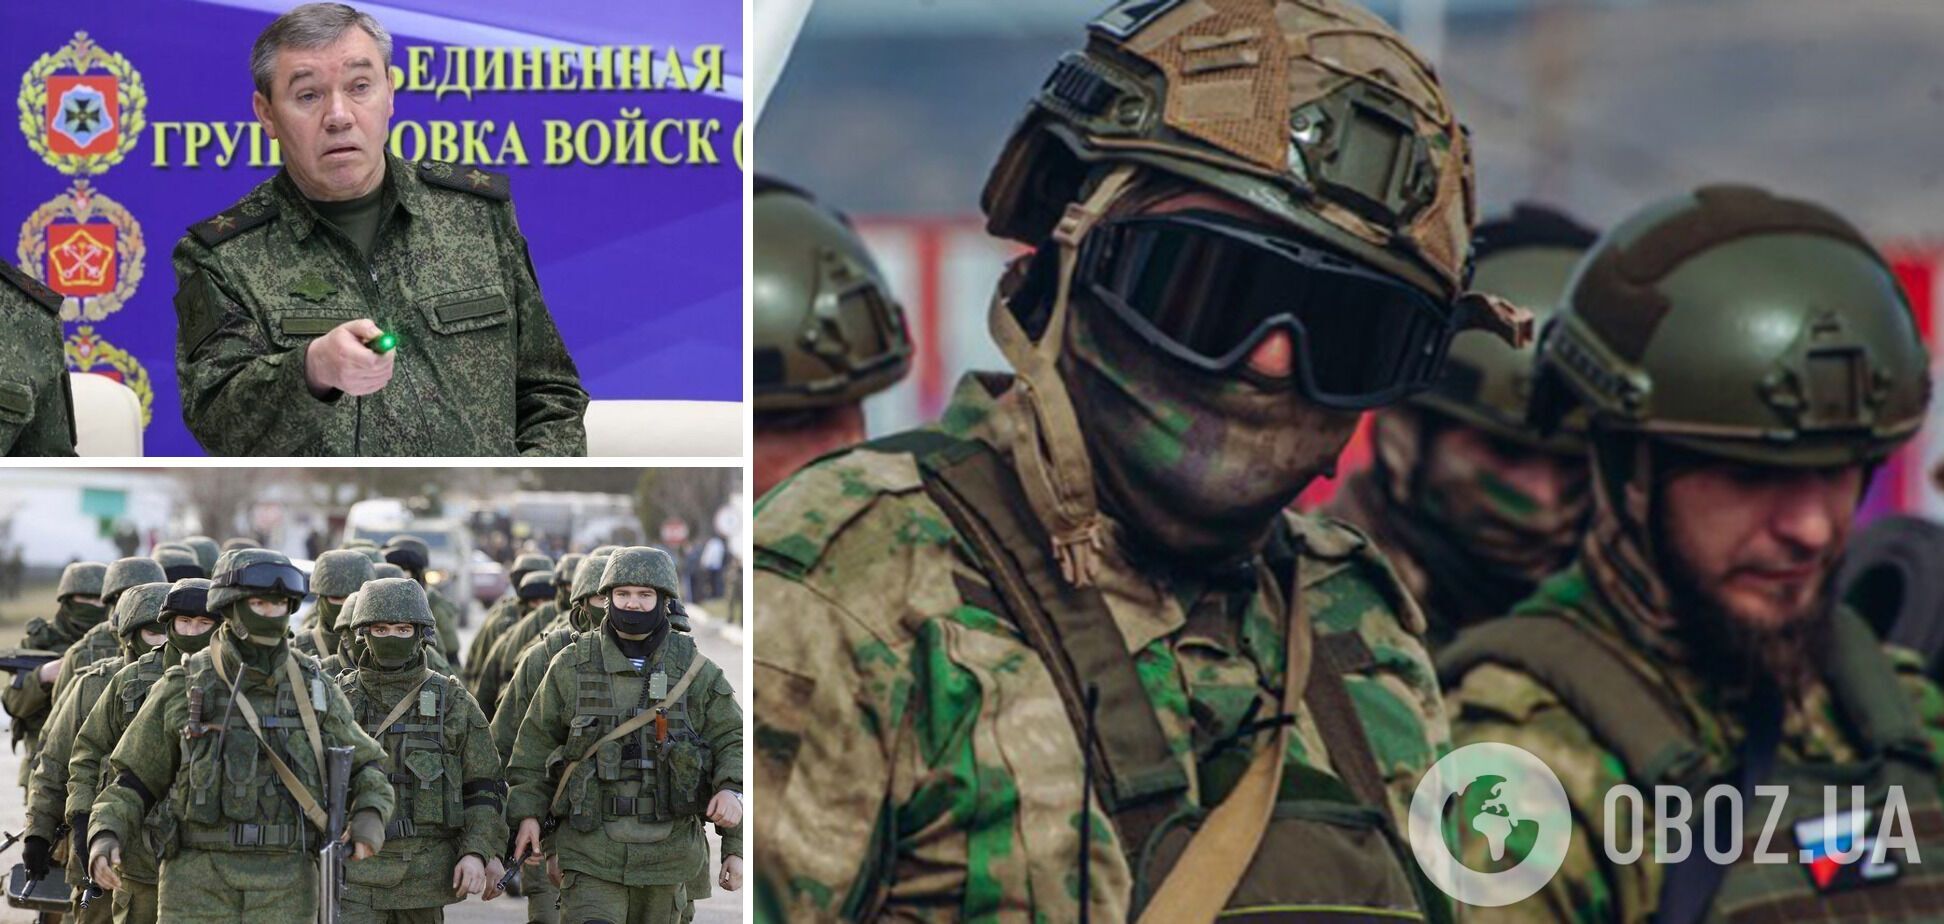 Герасимов попытался "реформировать" армию РФ, запретив бороды: это назвали фарсом – разведка Британии